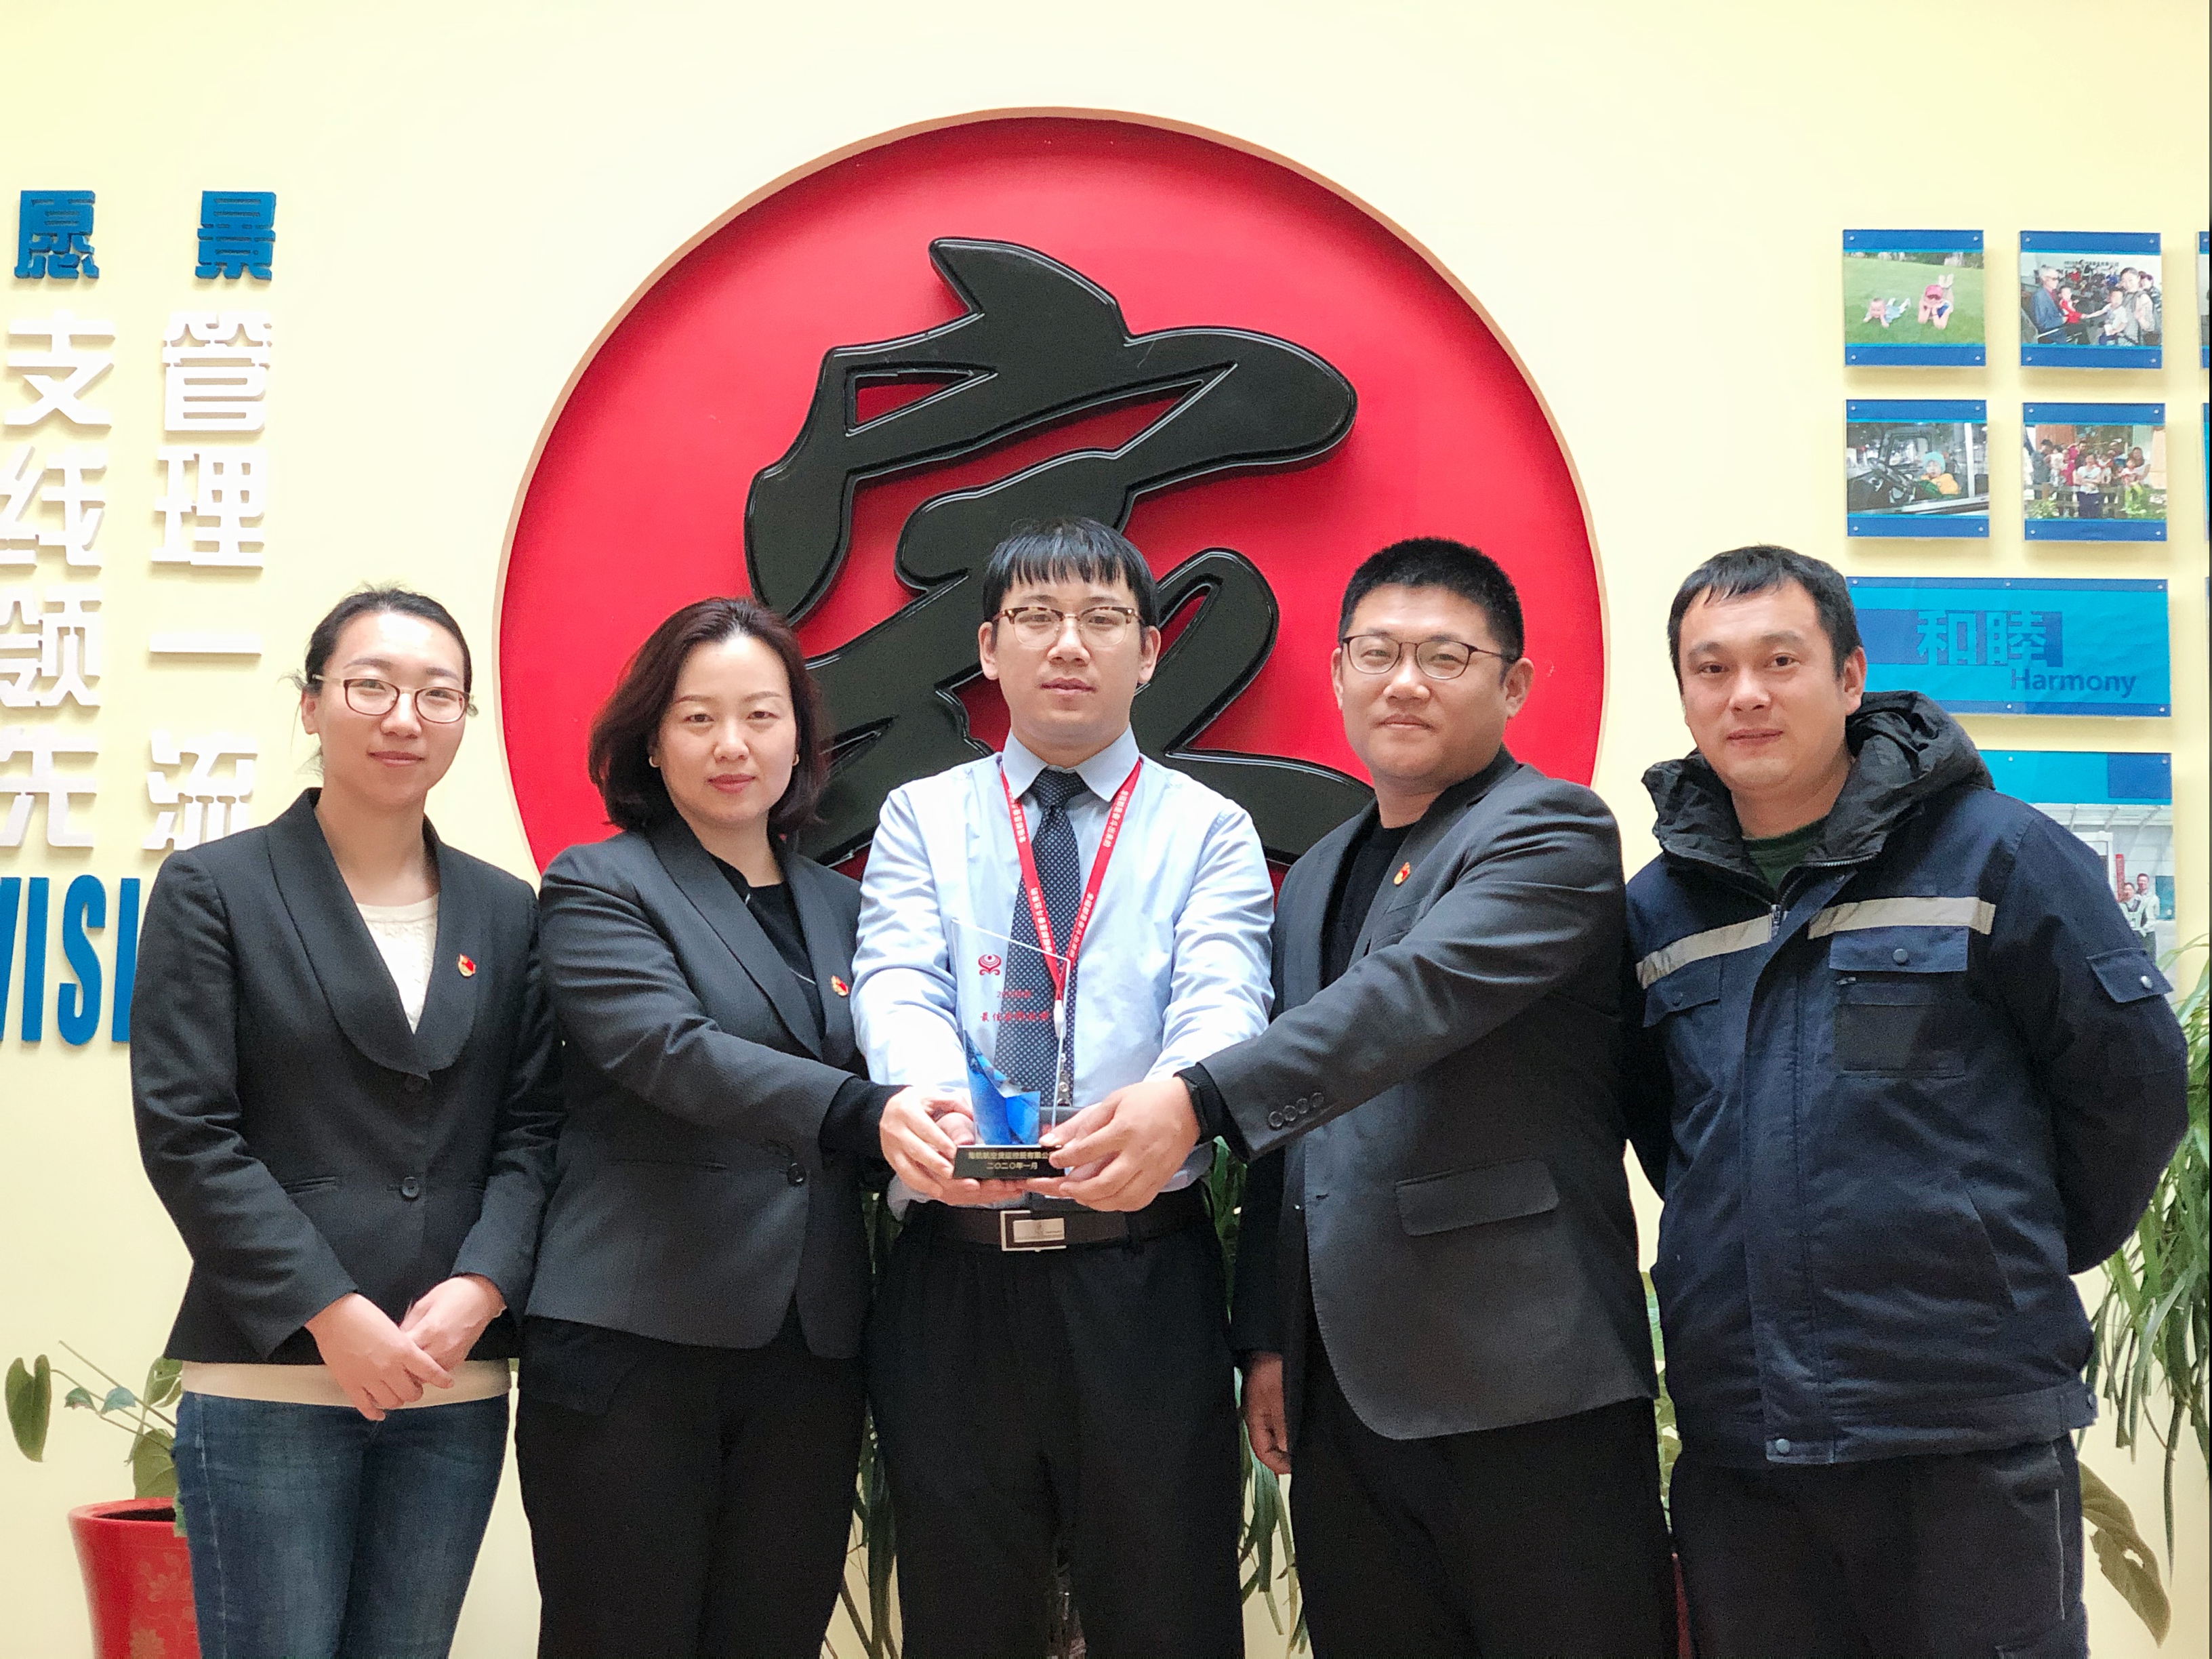 内蒙古民航机场地服分公司荣获海南航空“2019年度最佳合作伙伴”奖